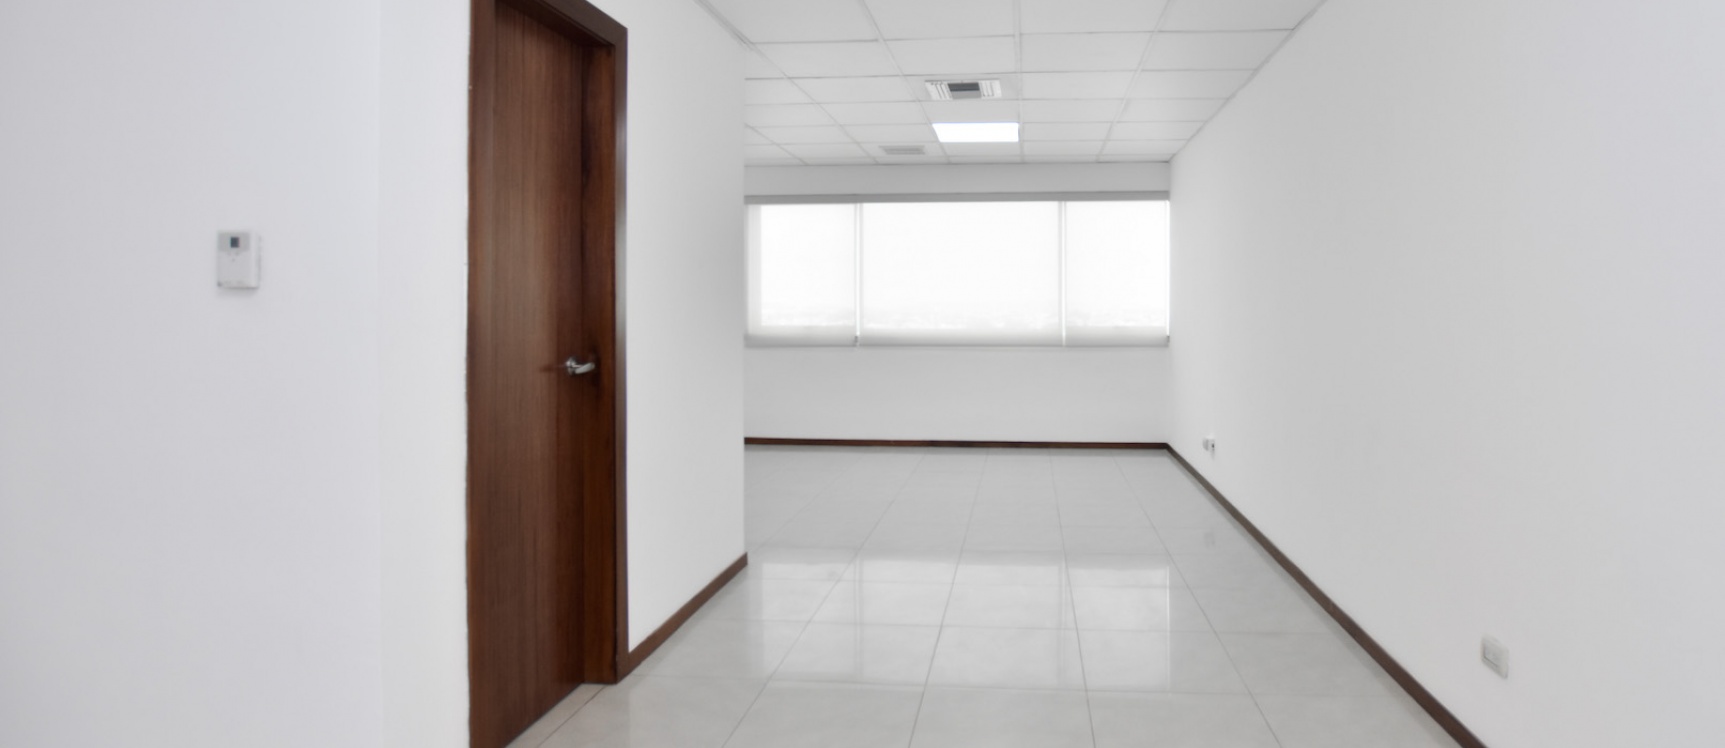 GeoBienes - Oficina de oportunidad en alquiler ubicada en el Edificio Trade Building - Plusvalia Guayaquil Casas de venta y alquiler Inmobiliaria Ecuador